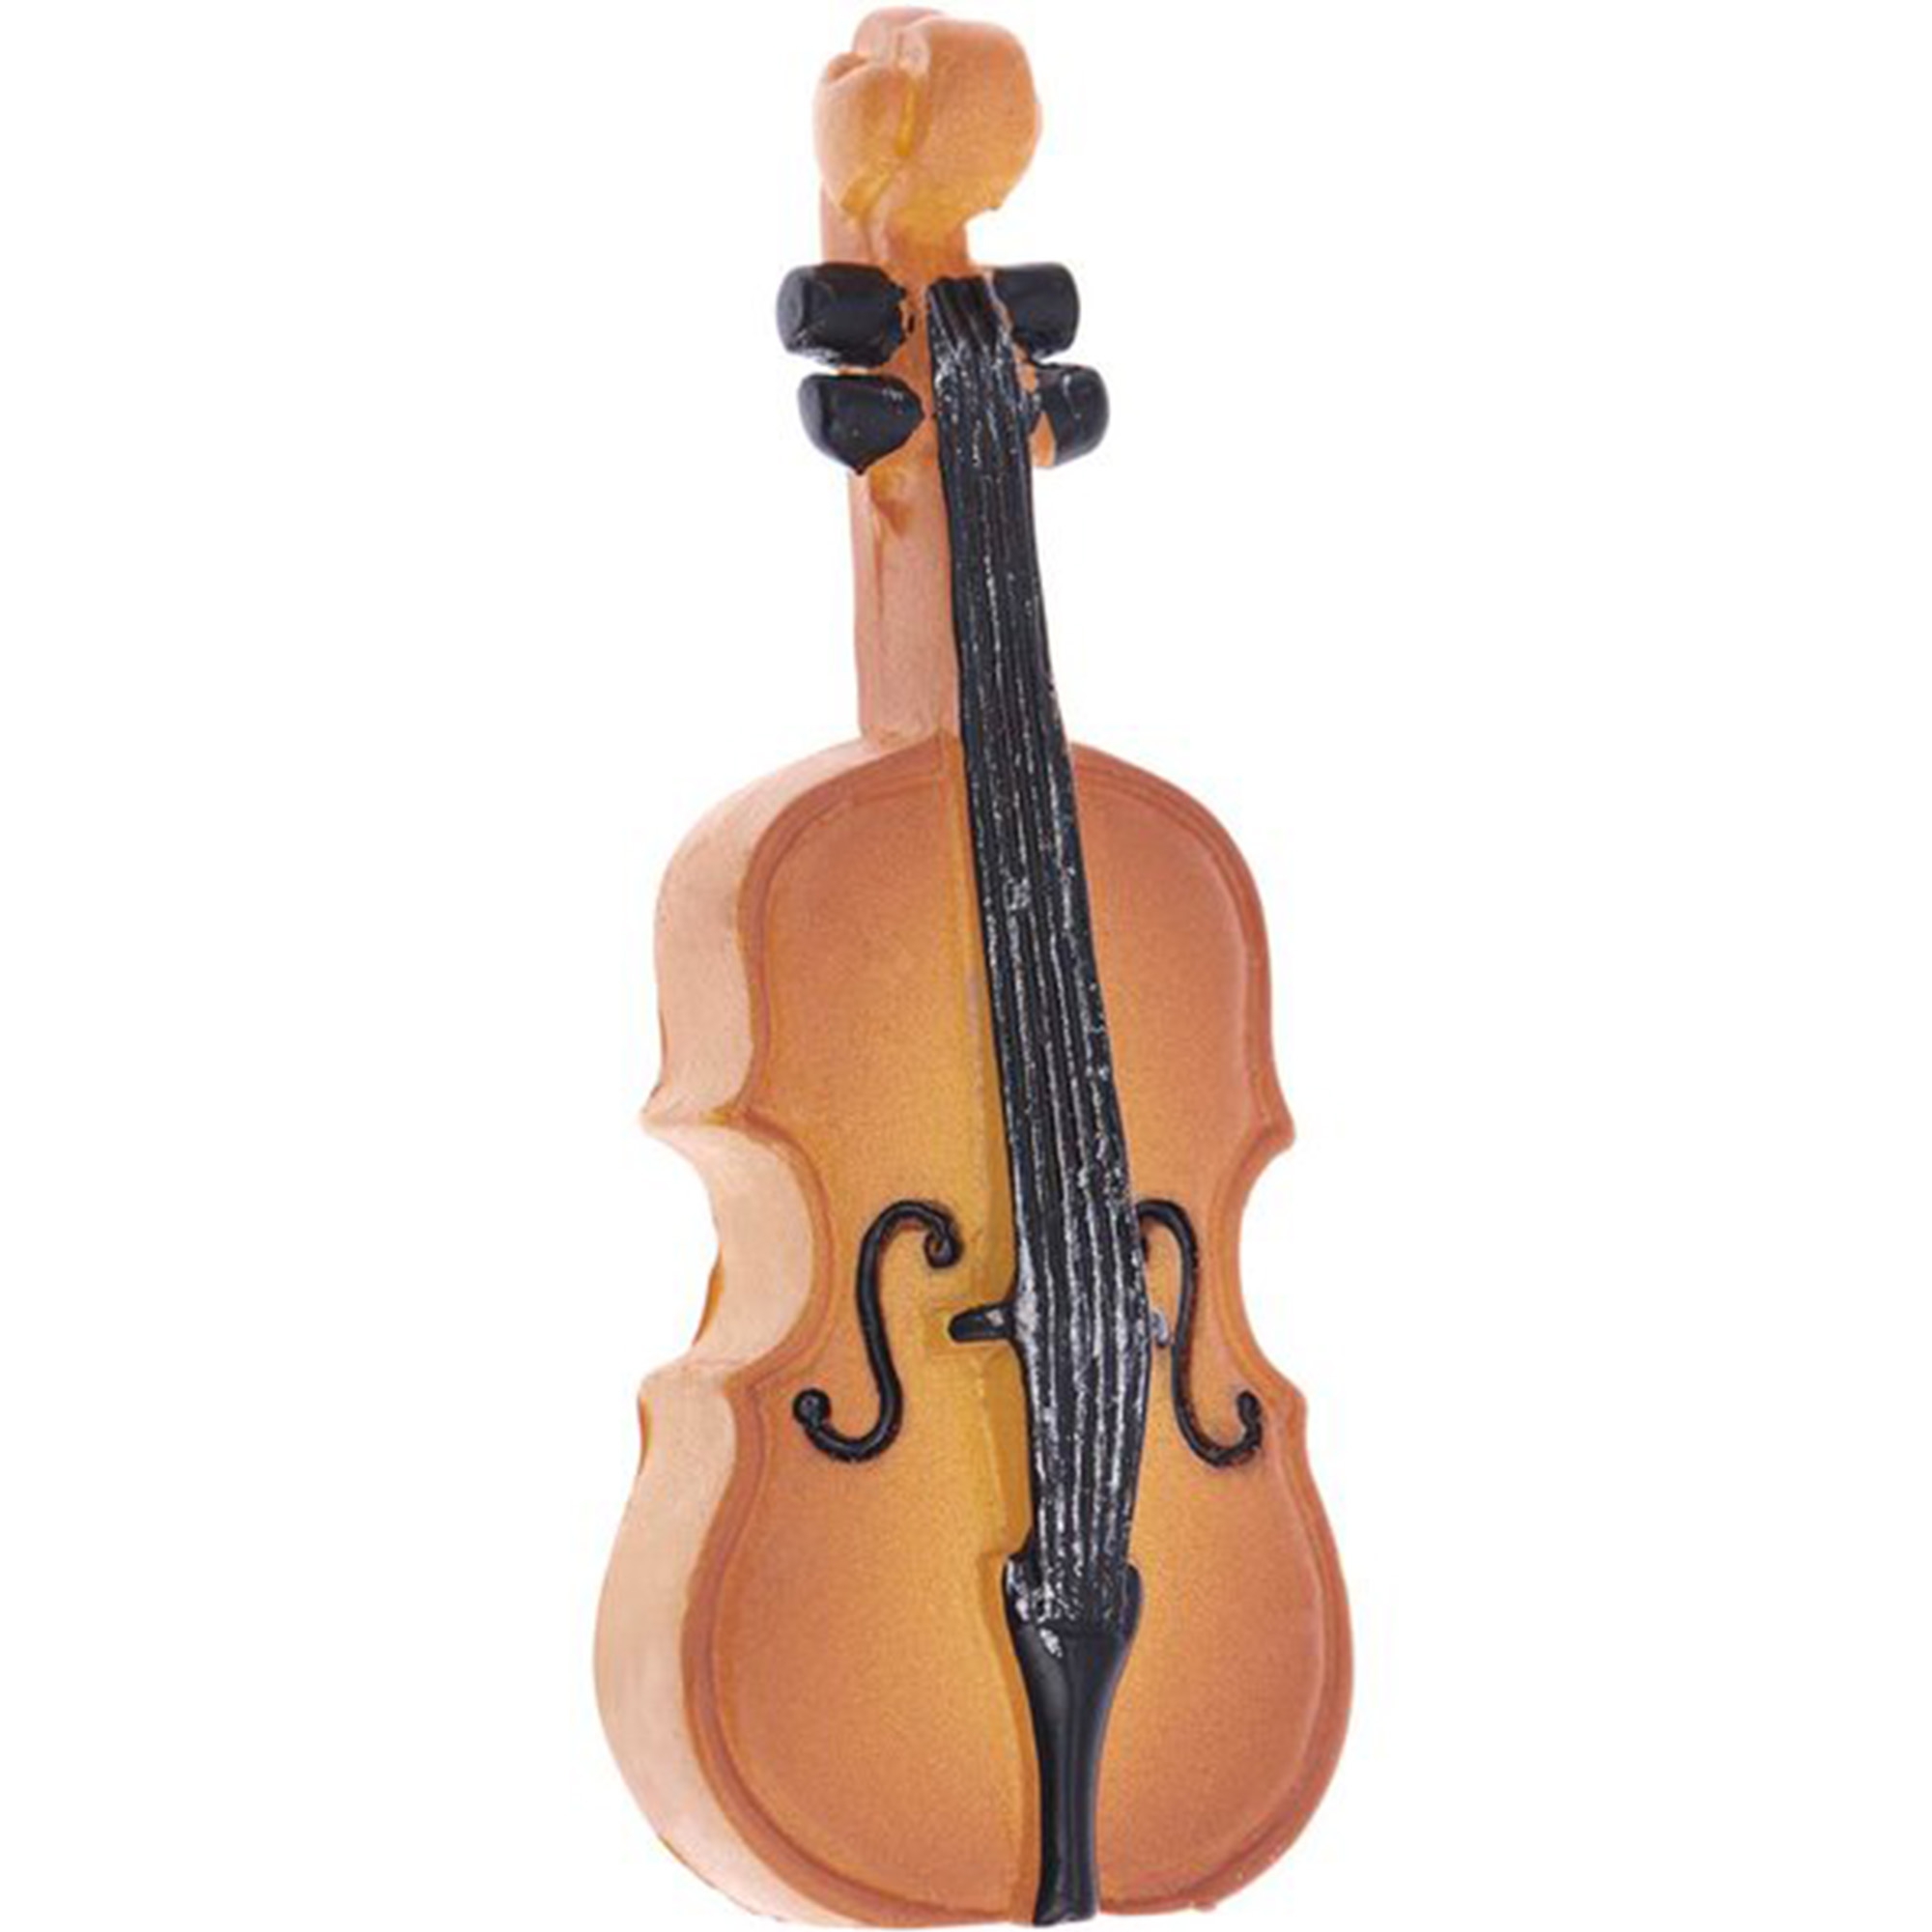 Miniatur "Geige" für die Wichteltür